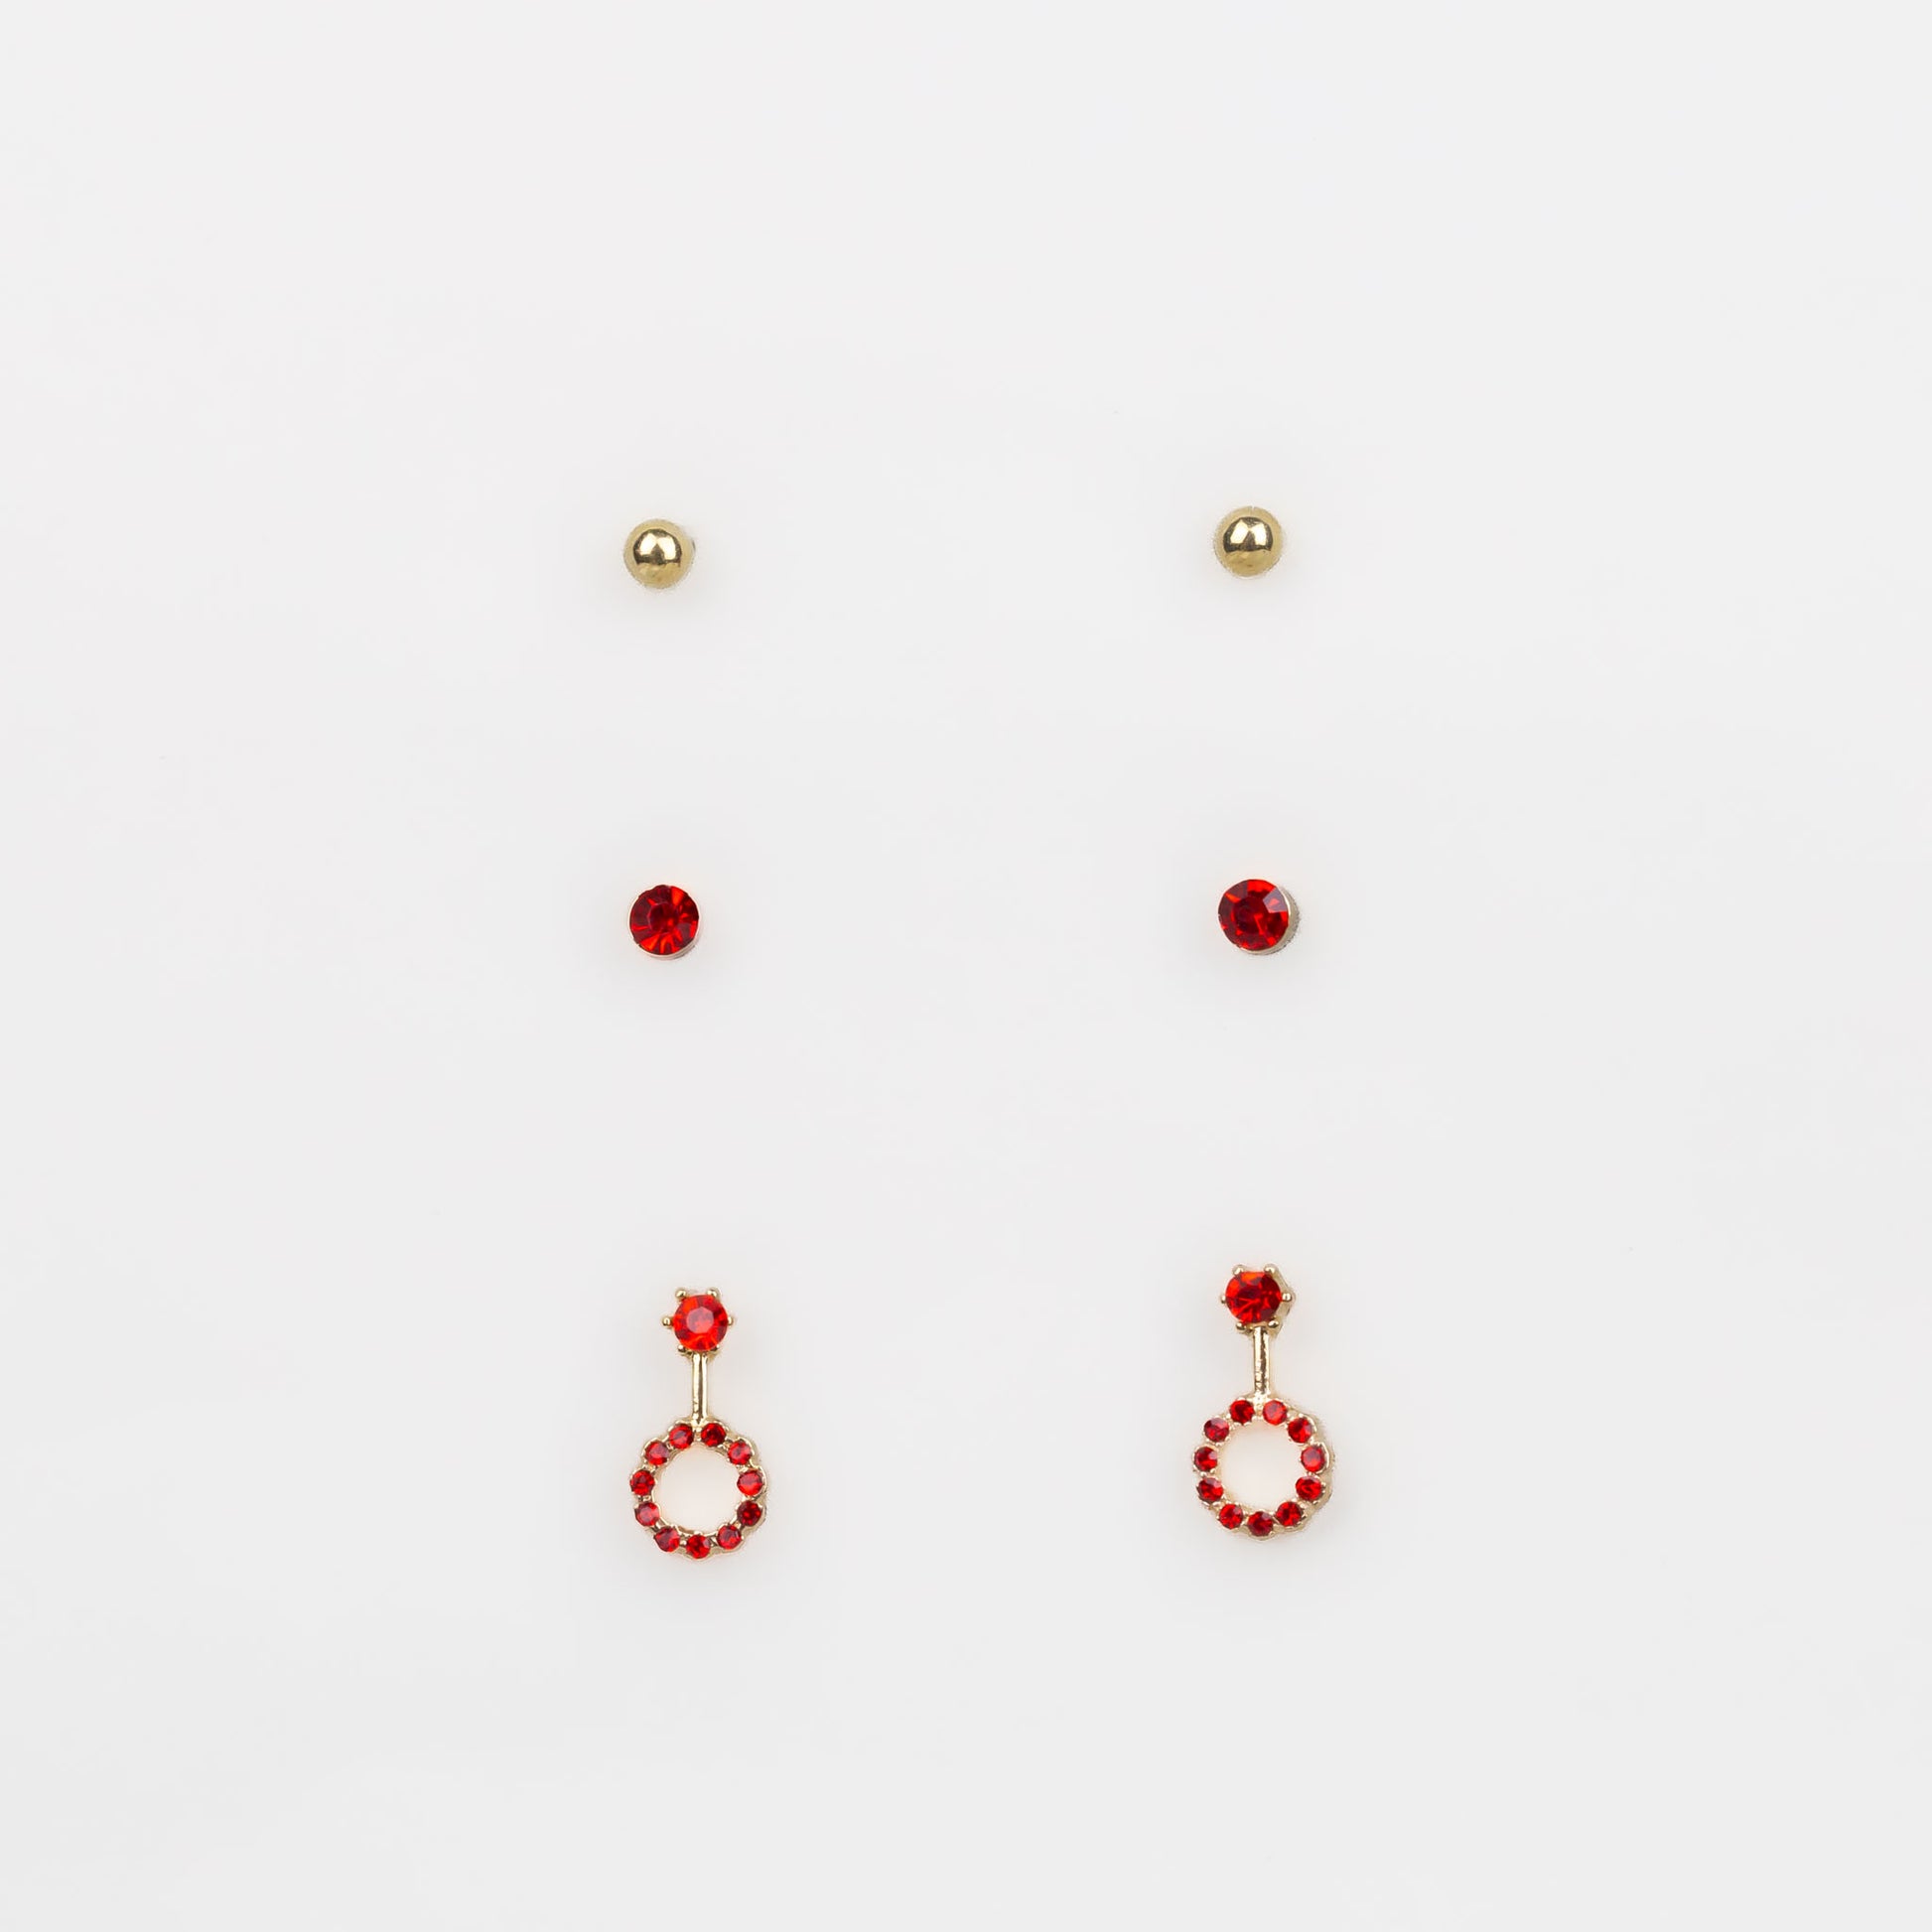 Cercei mici aurii discreți cu formă de amuletă și pietre, set 3 perechi - Roșu